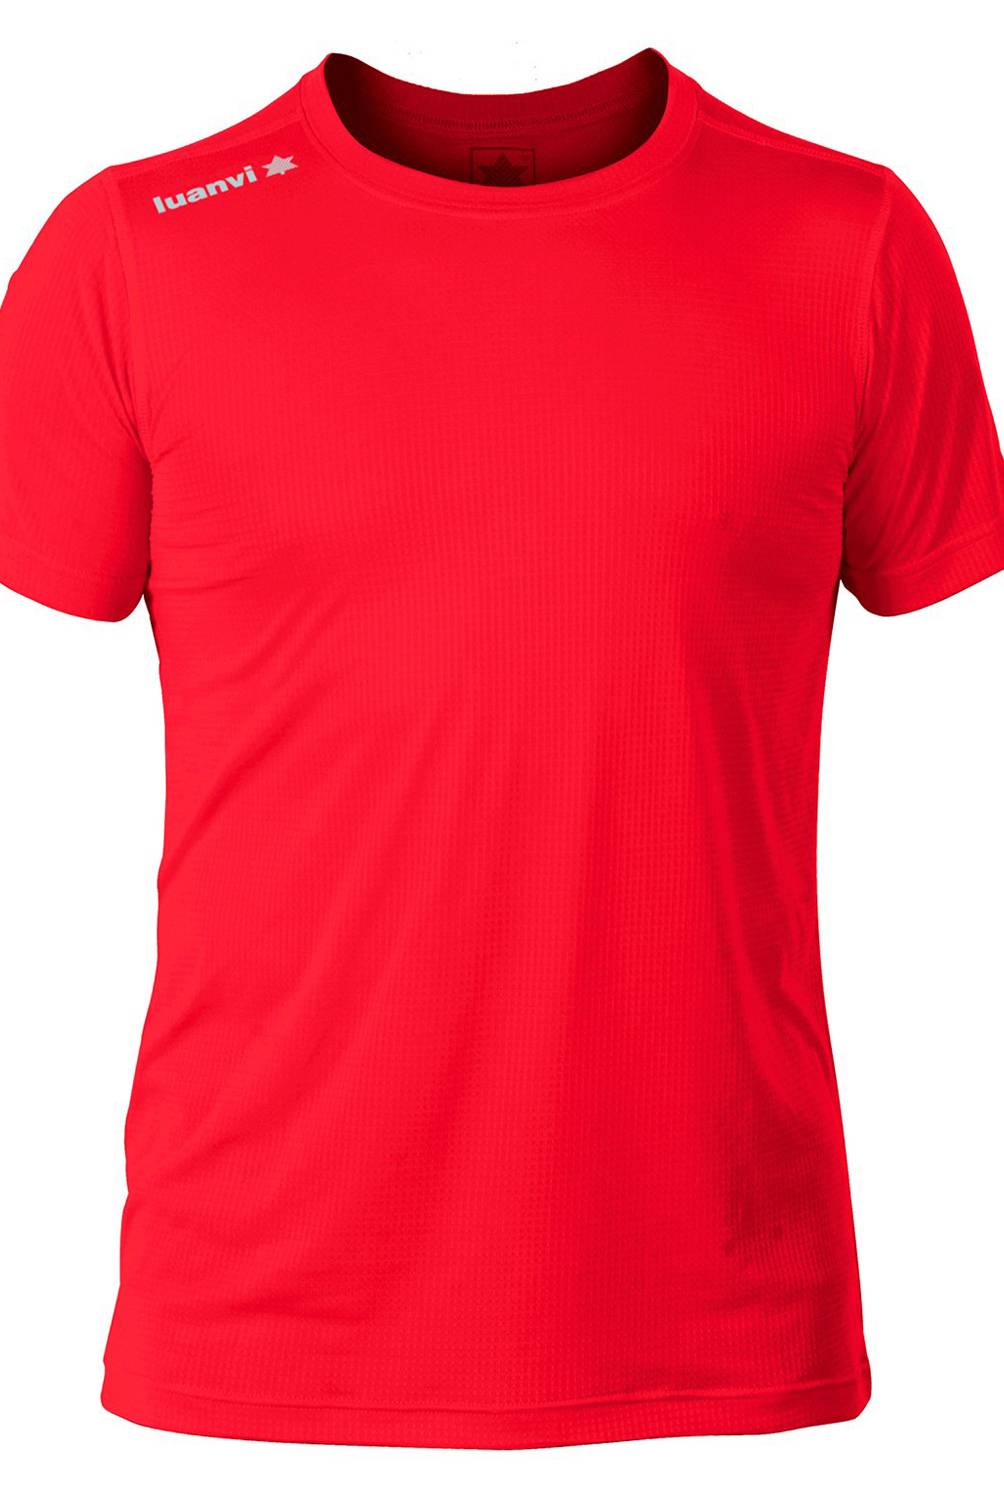 LUANVI - Camiseta Nocaut Gama